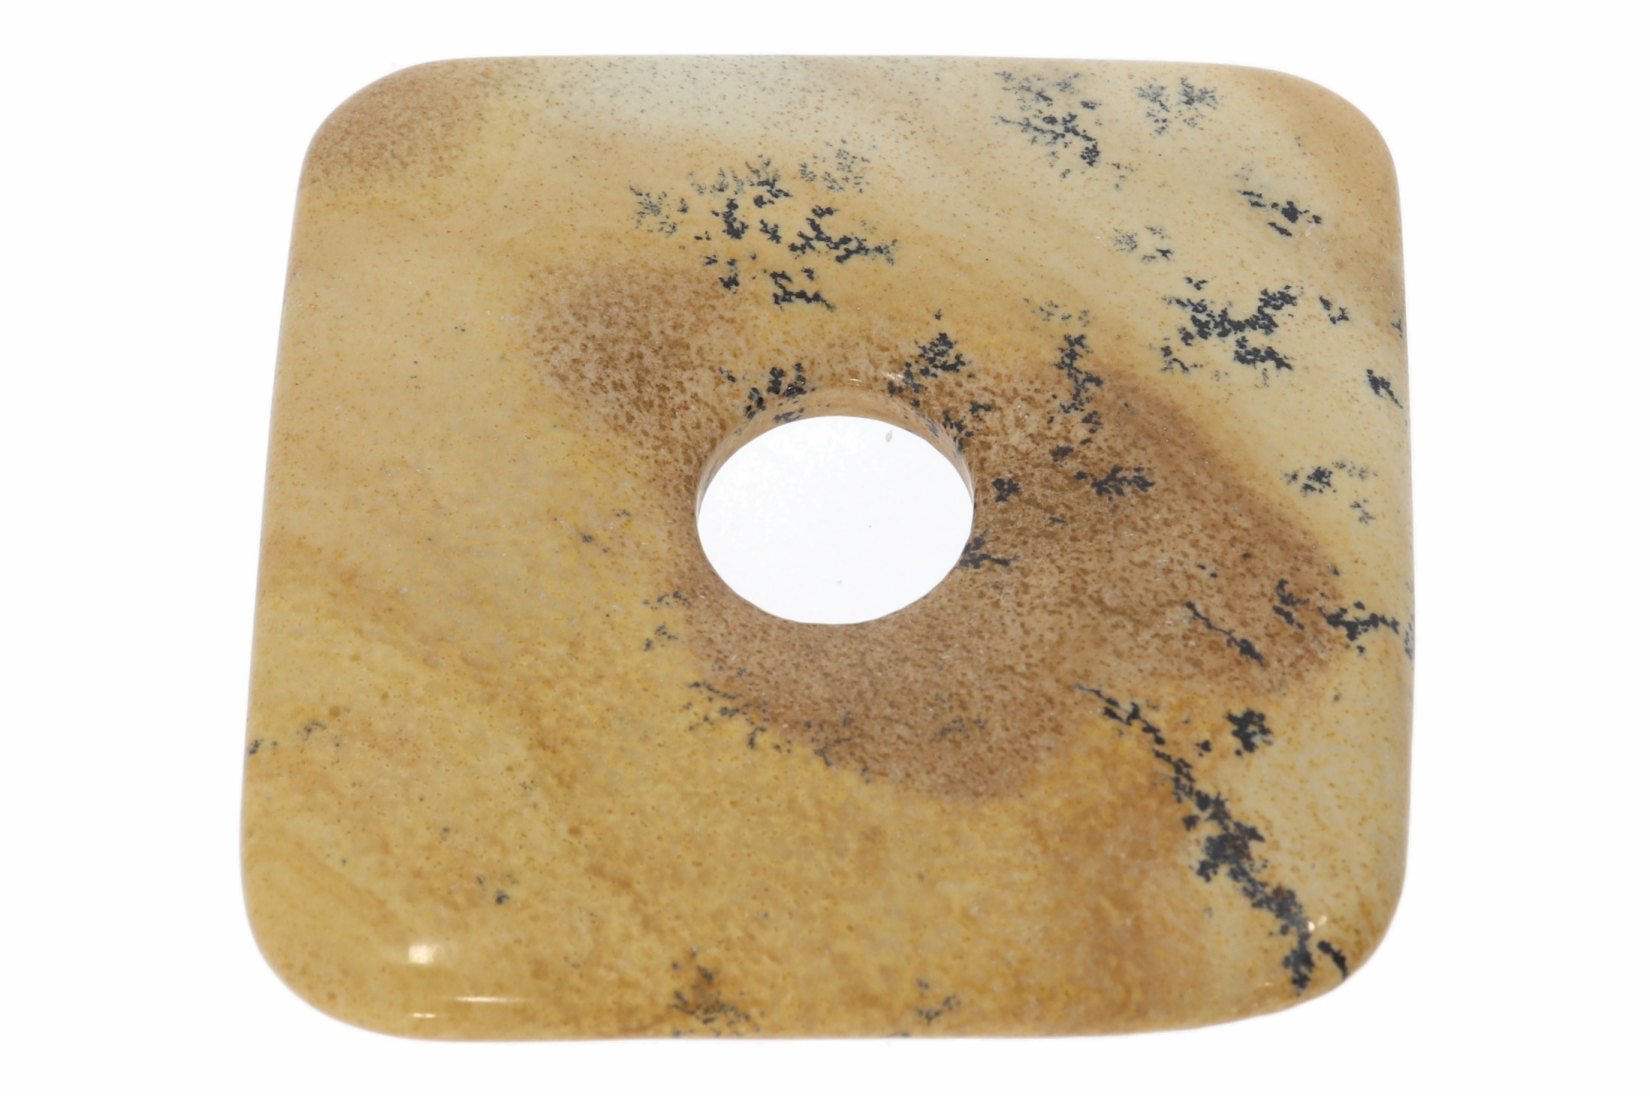 UNIKAT - Landschafts Jaspis viereck Donut Schmuck Mineralien Anhänger 50mm - 28499